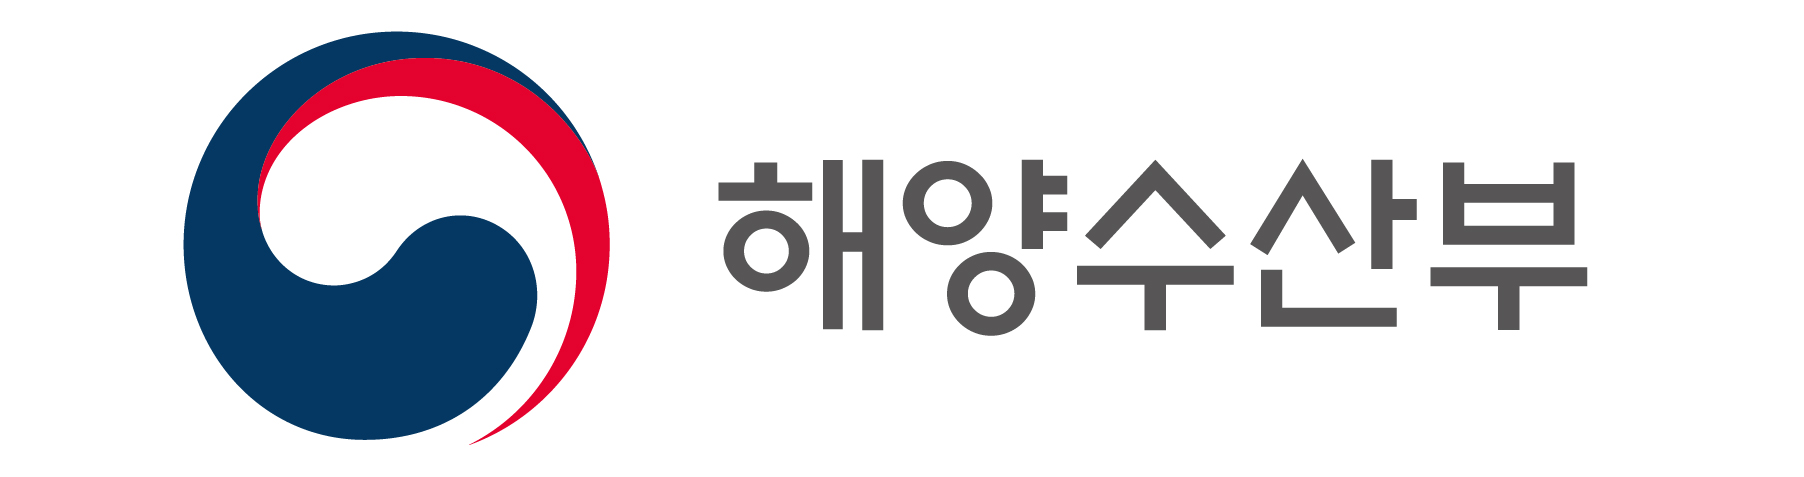 해양수산부의 로고와 캐릭터 원본ai파일 다운로드